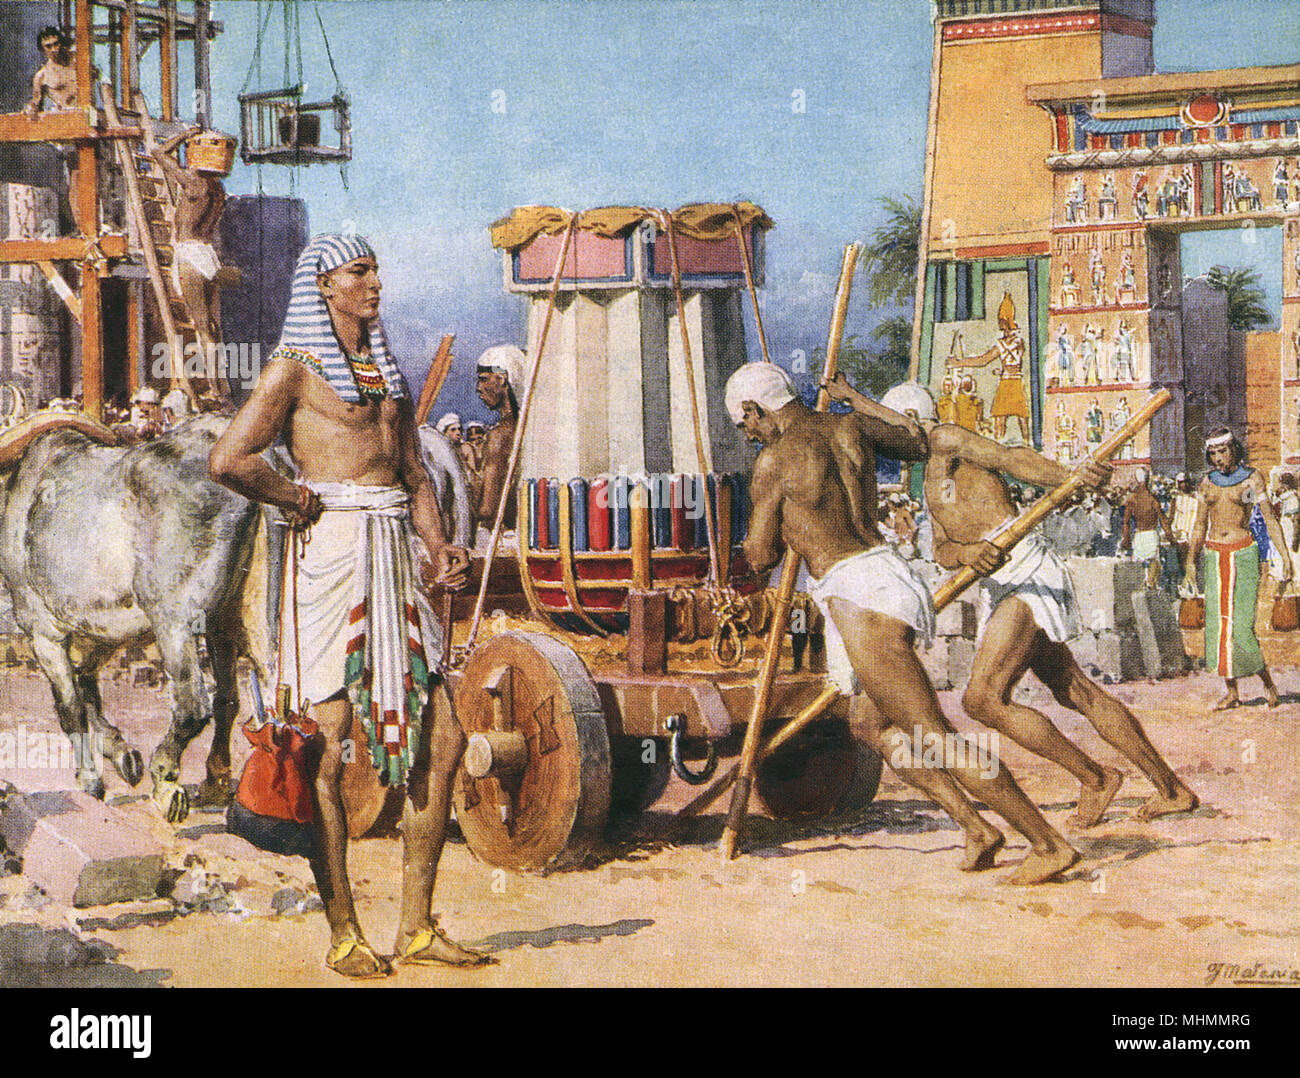 Lavoratori costruire un tempio o palace per il Faraone in Egitto. Data: sconosciuto, poss. 1920s Foto Stock